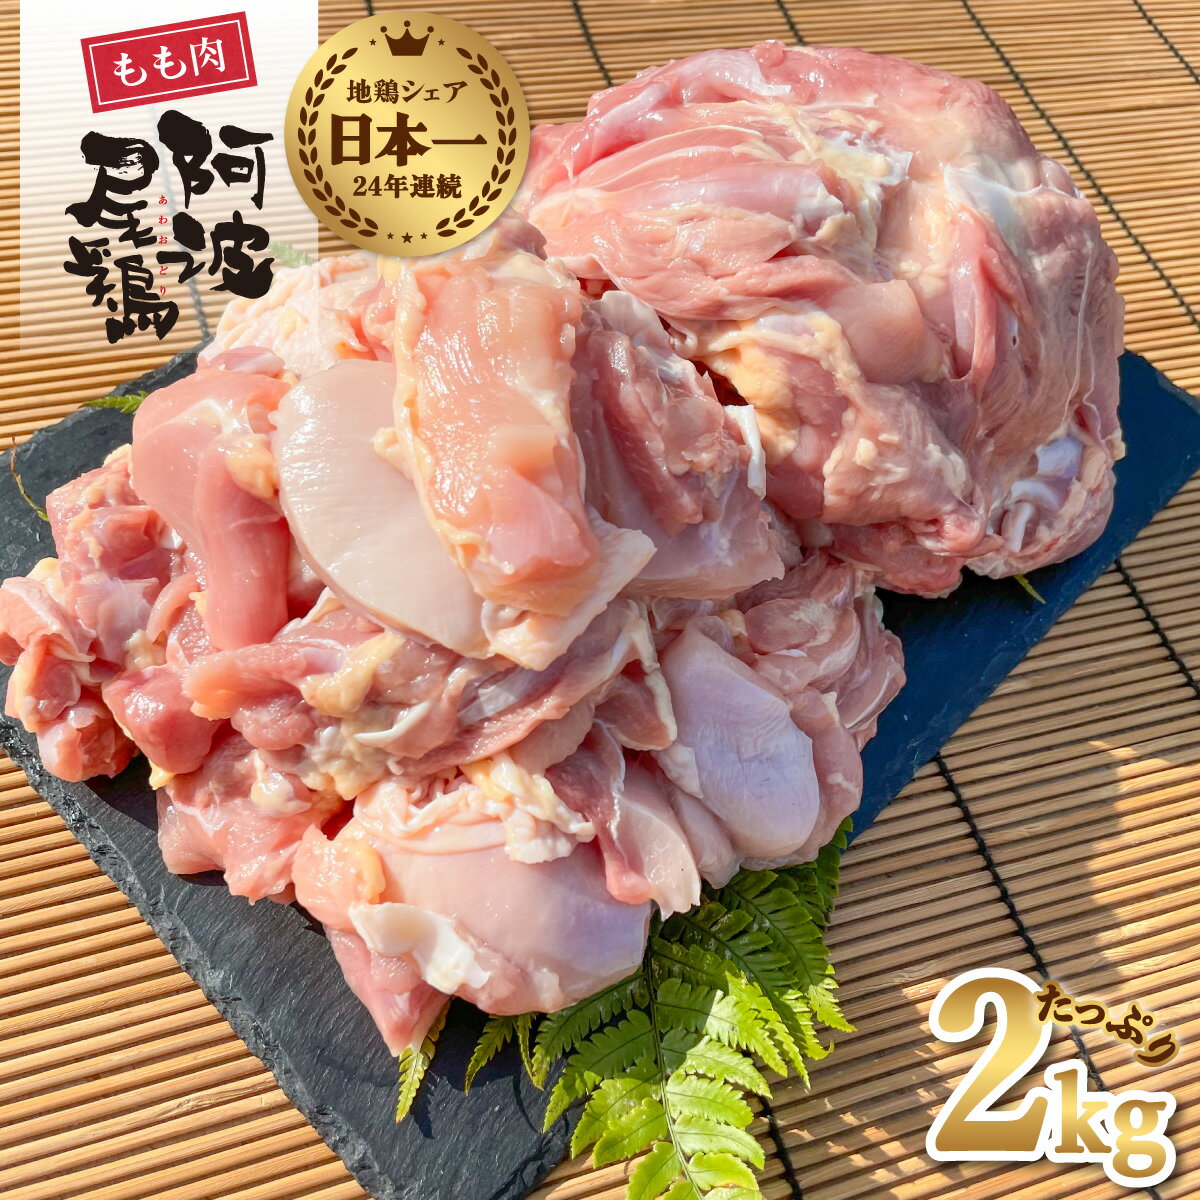 【ふるさと納税】 最高級 地鶏 鶏もも 小分け 国産 日本一 阿波尾鶏 鶏肉 約2kg 切り身 500g×2パック 正肉 500g×2パック 冷凍 鶏モモ 鶏モモ肉 とりにく とり肉